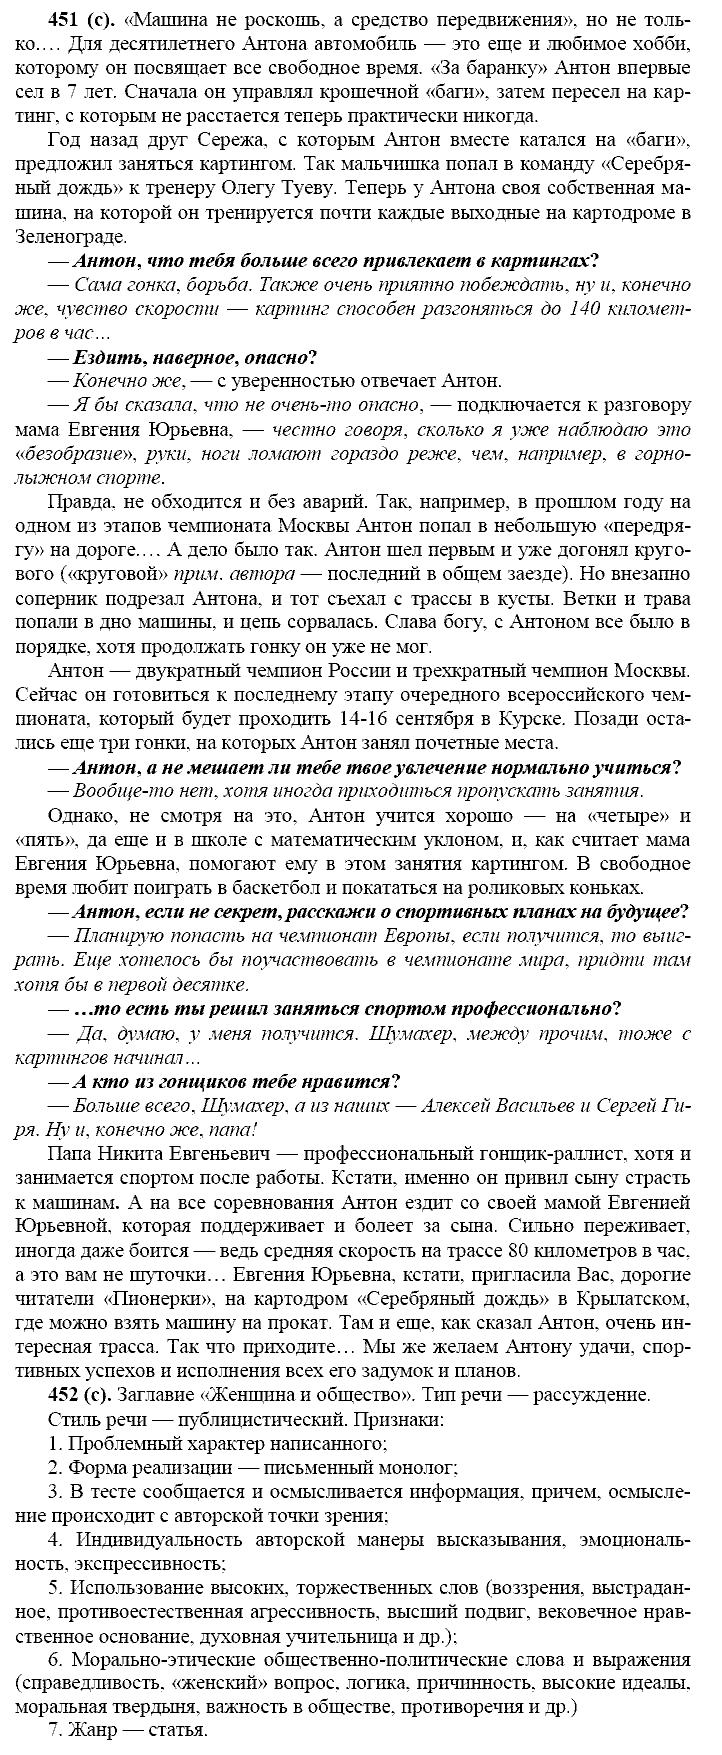 Русский язык, 11 класс, Власенков, Рыбченков, 2009-2014, задание: 451 (с)